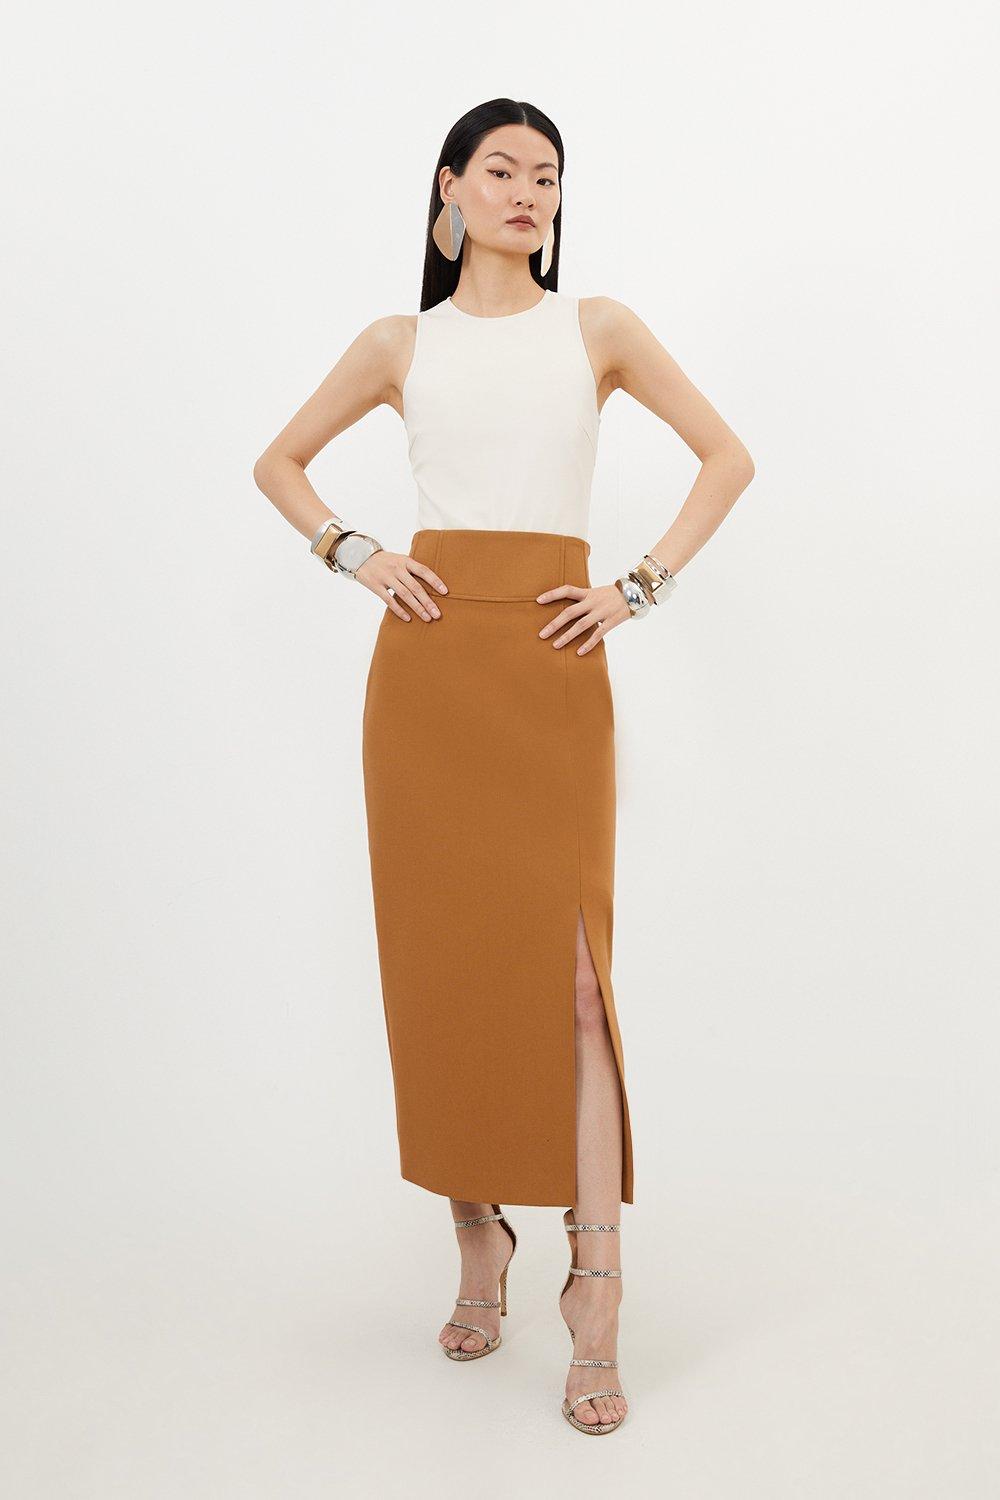 Компактная эластичная юбка-карандаш миди с боковым разрезом Karen Millen, бежевый простая юбка женская черная юбка миди с высокой талией и боковым разрезом модель 2021 года корейская мода эластичная облегающая юбка трапе